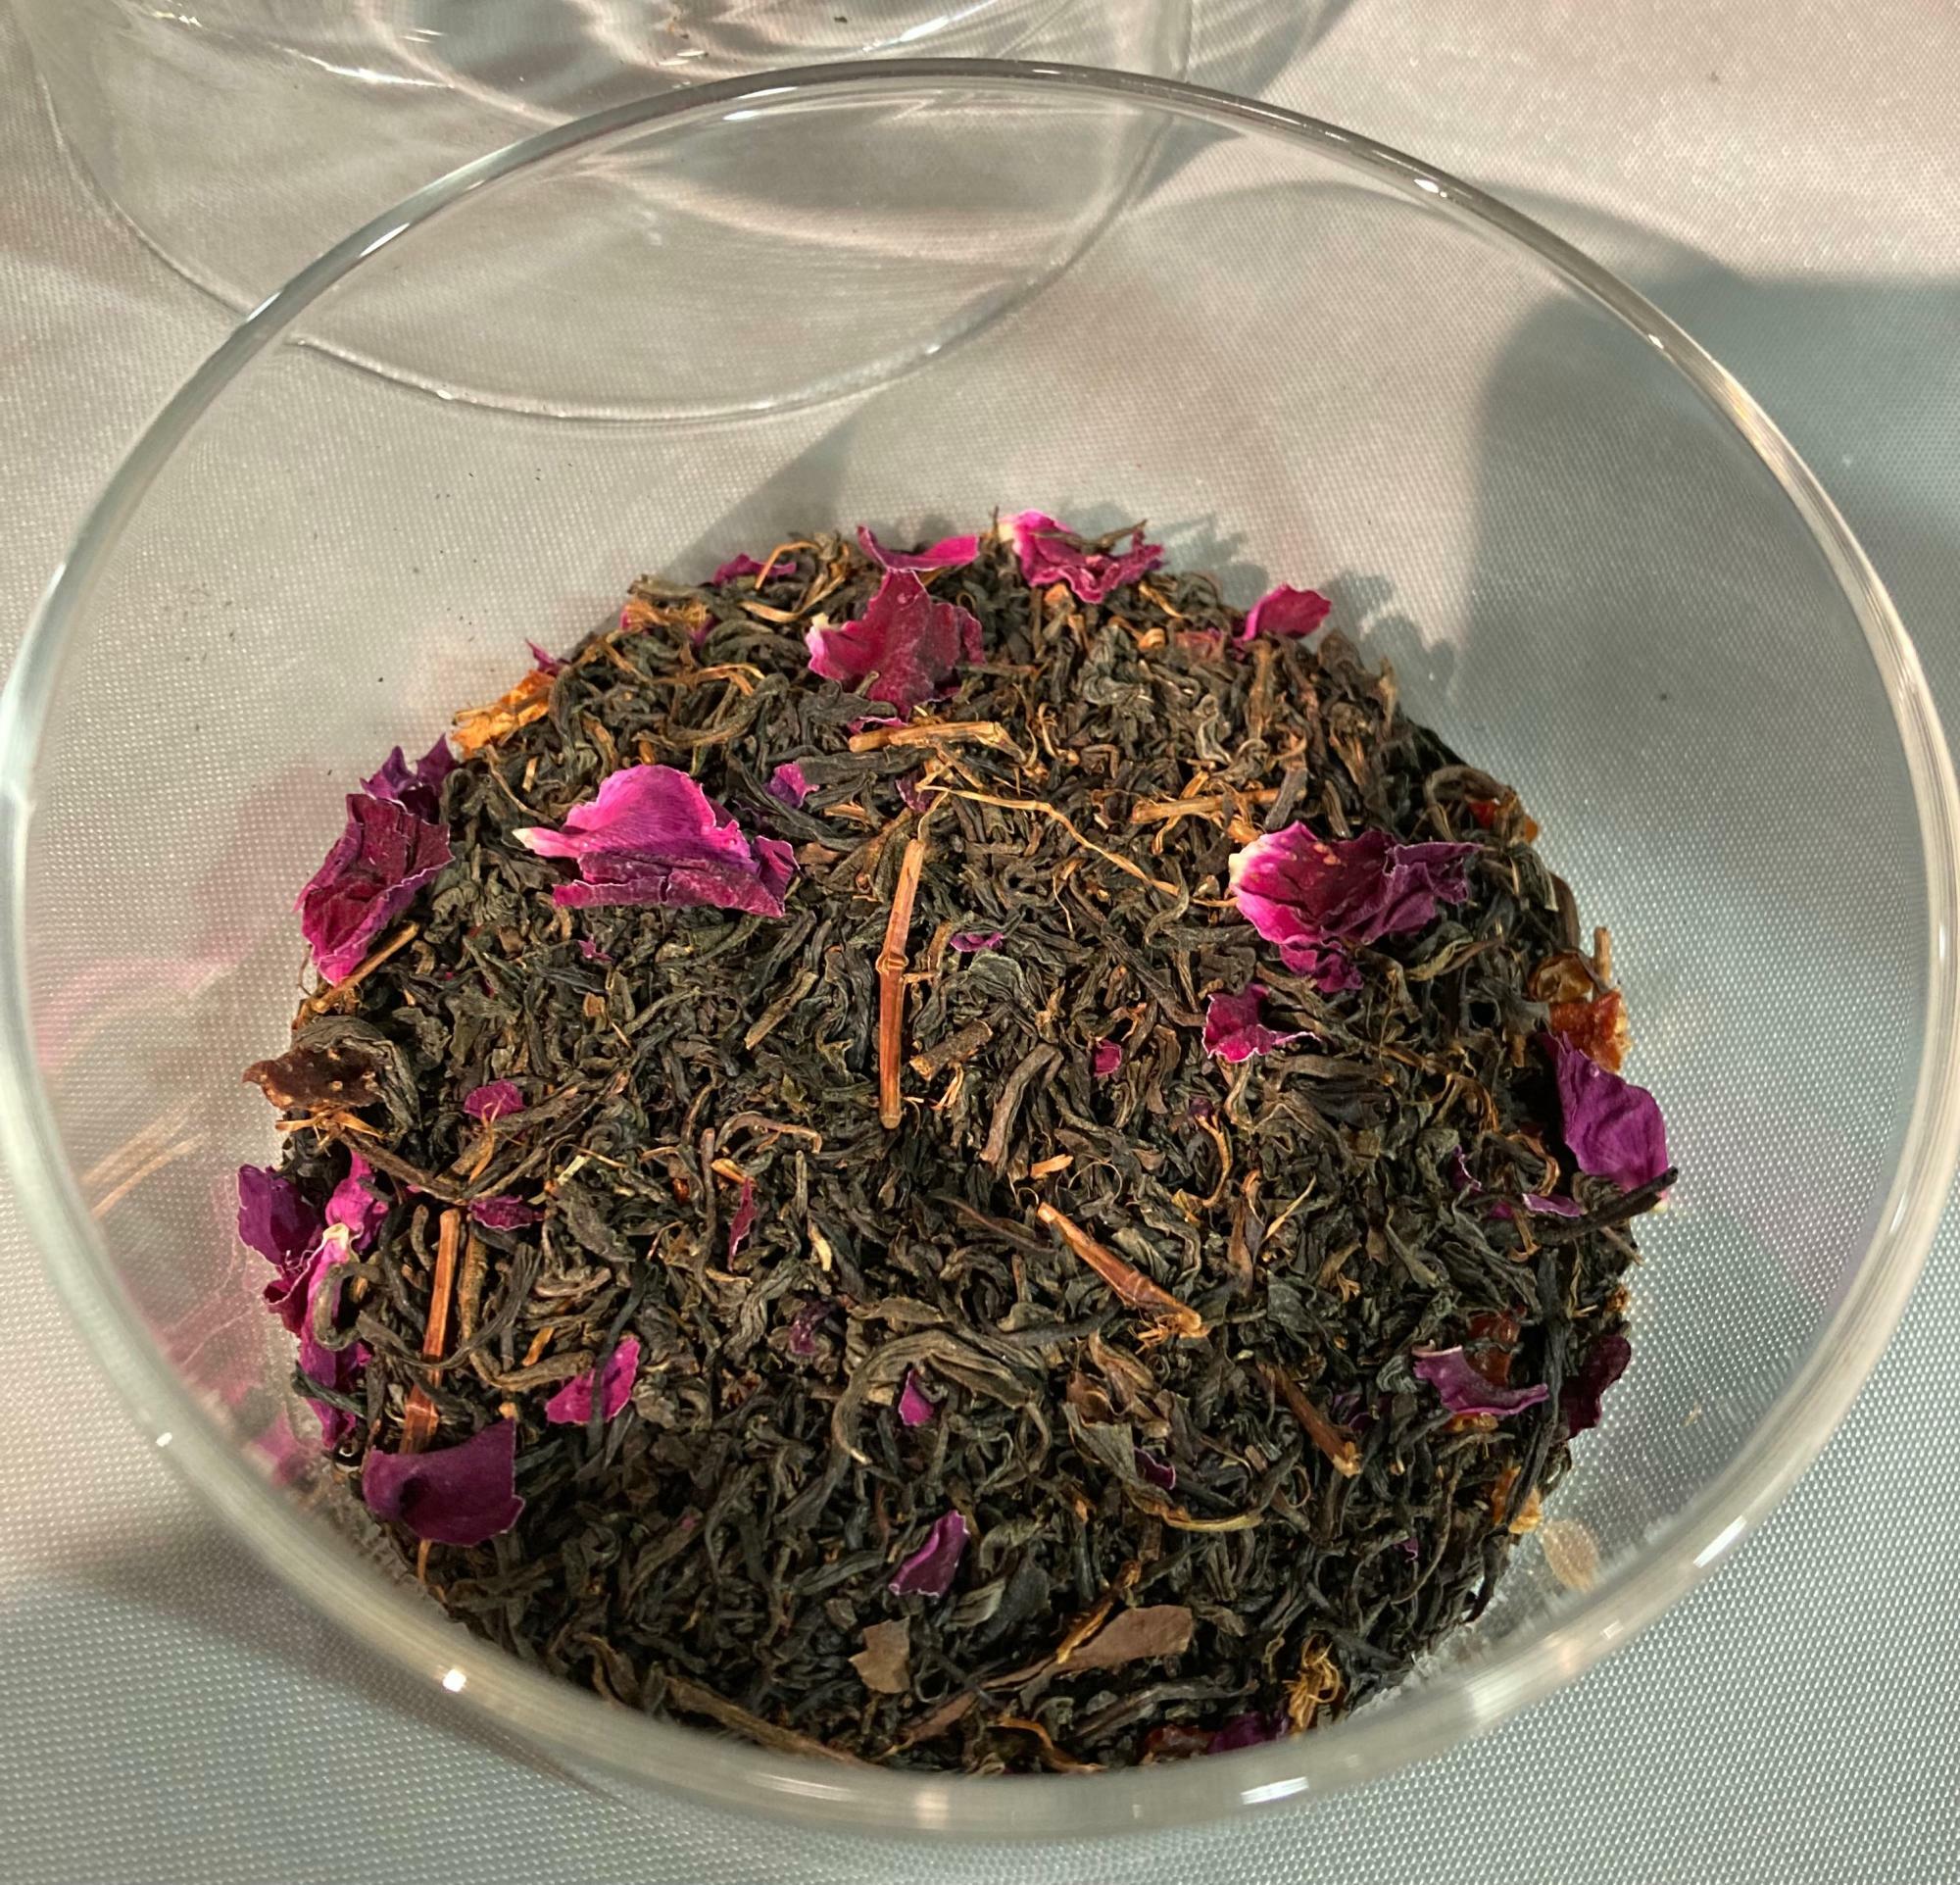 静岡産のオーガニック和紅茶に手摘みのハマナスの花と実とアマチャの葉がブレンドされている日本茶のフレーバーティー「浜茄子紅茶」